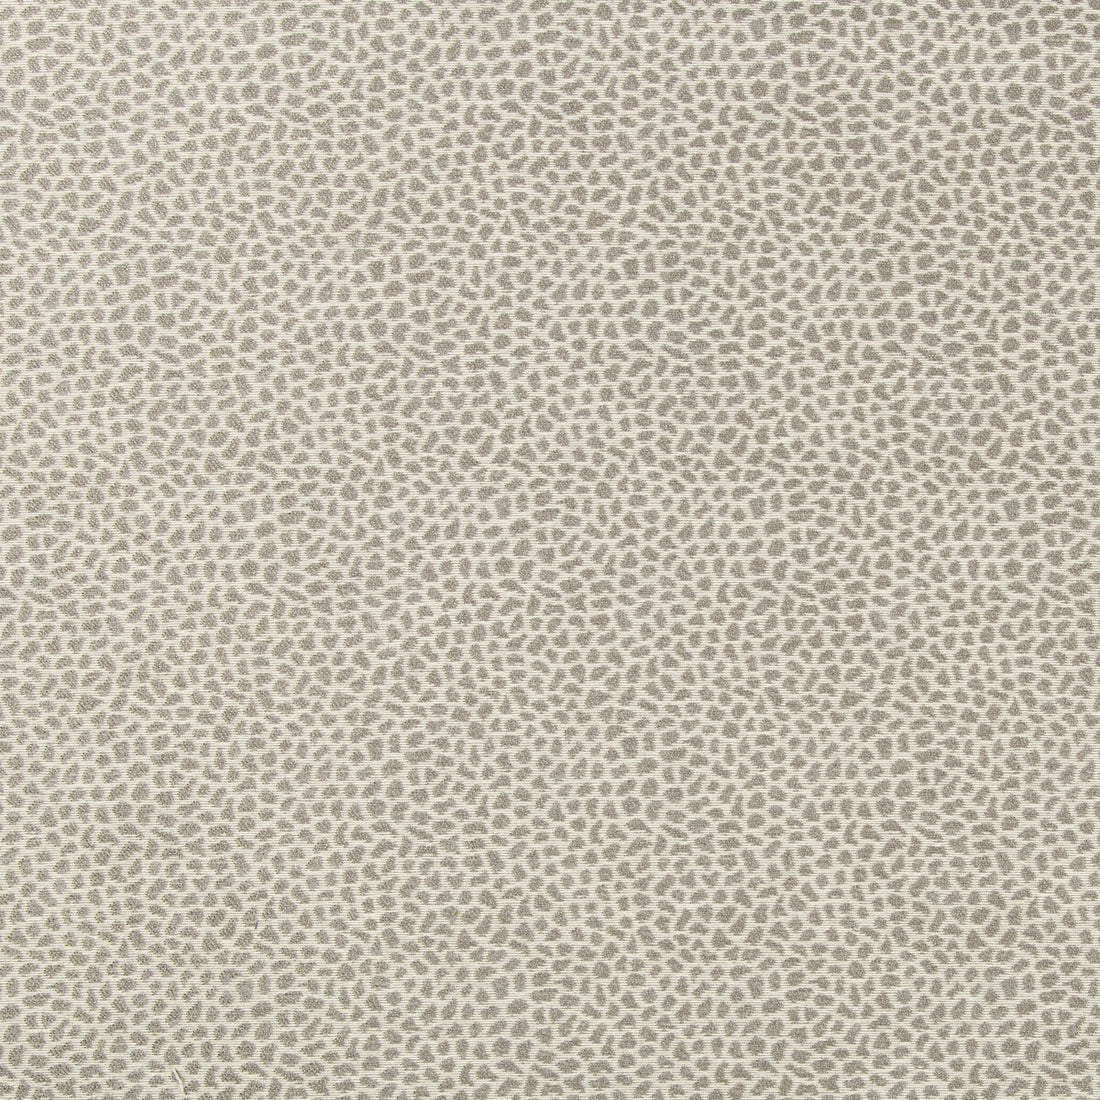 Kravet Design fabric in 35656-16 color - pattern 35656.16.0 - by Kravet Design